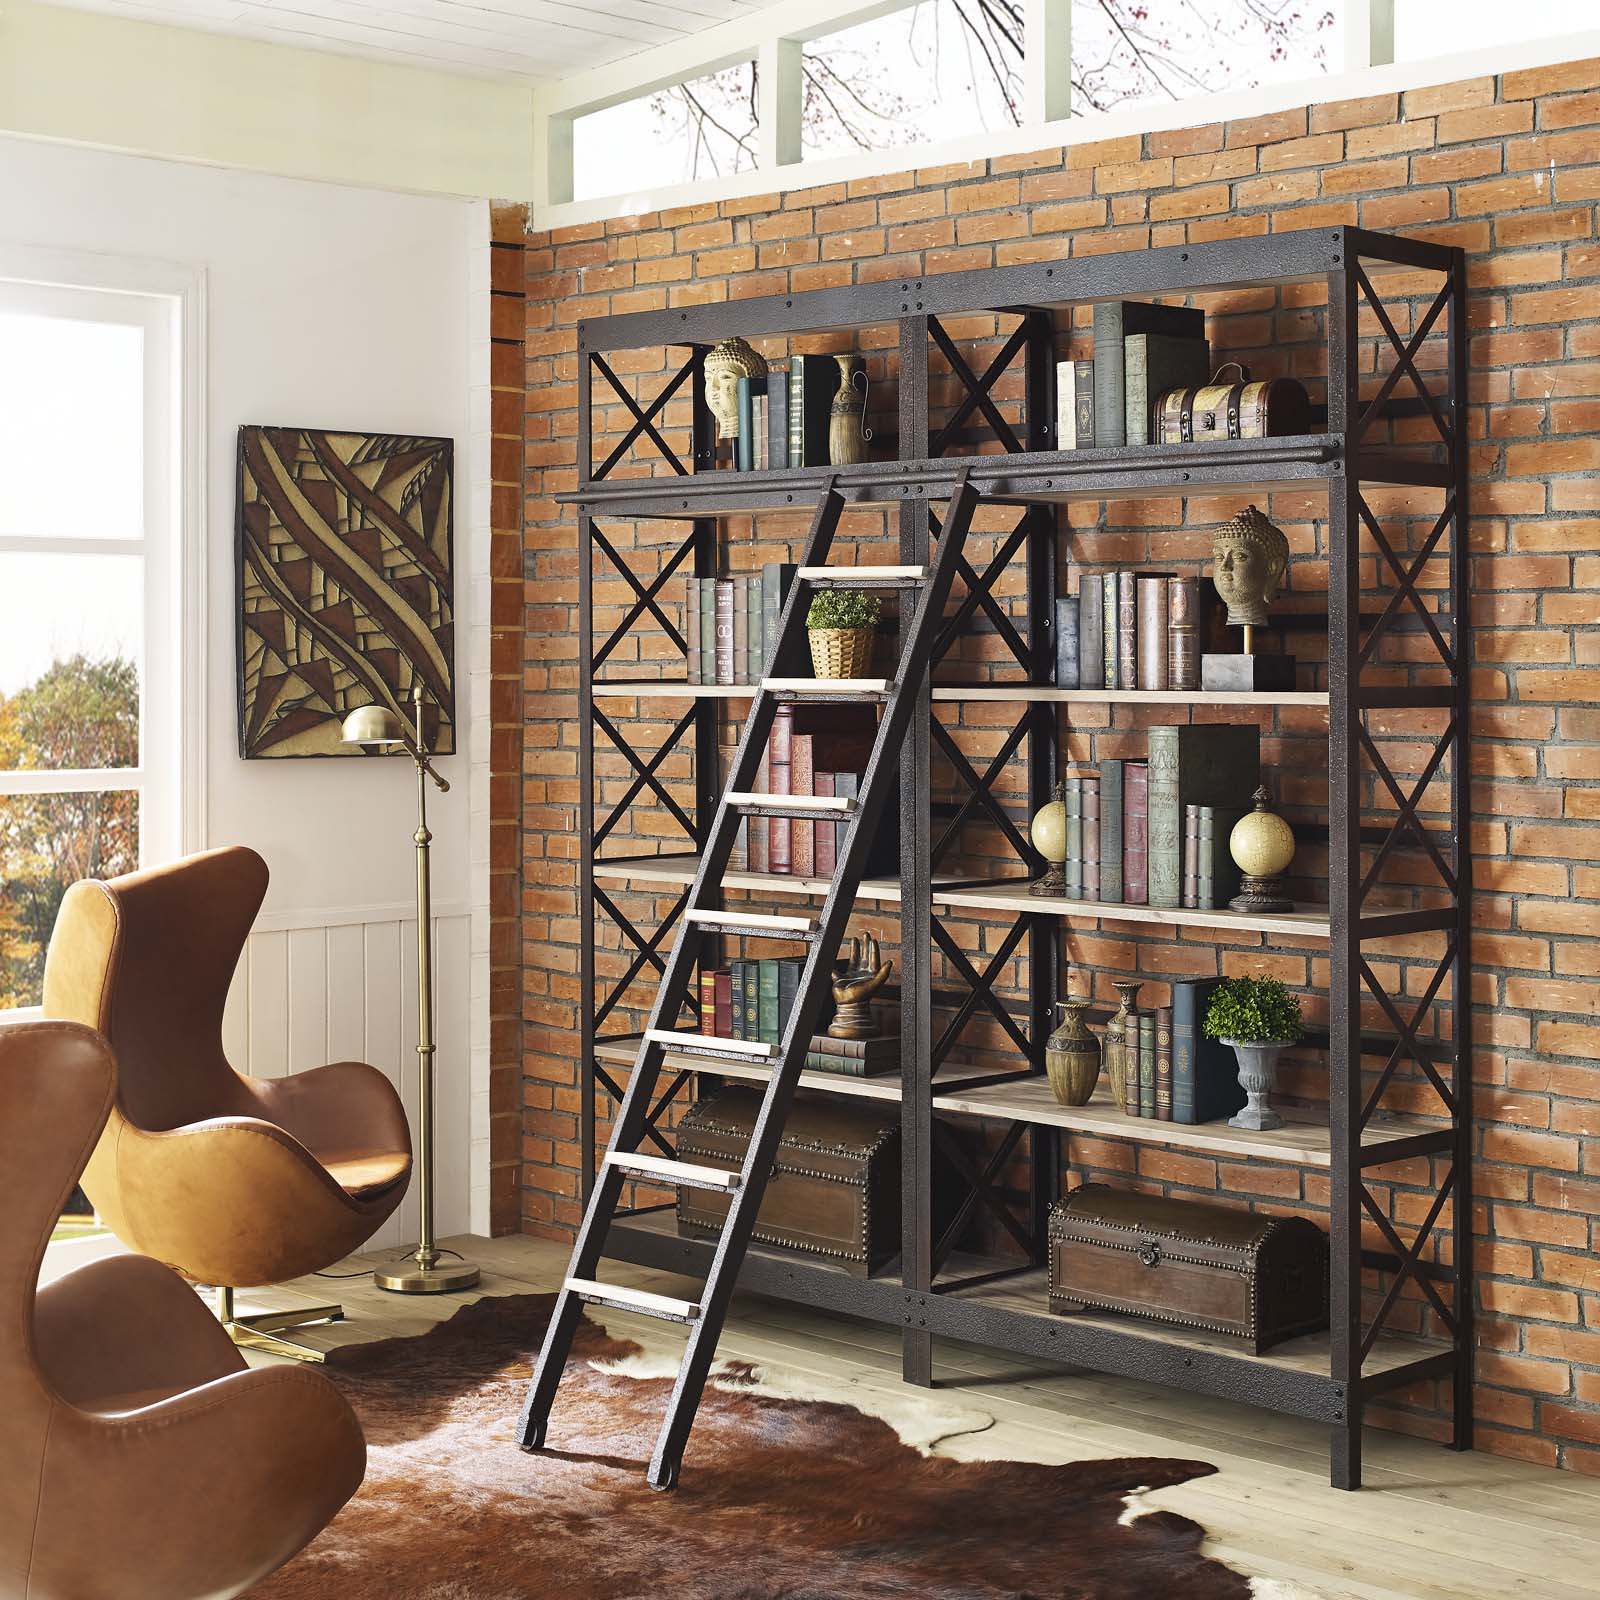 Headway Wood Bookshelf - East Shore Modern Home Furnishings